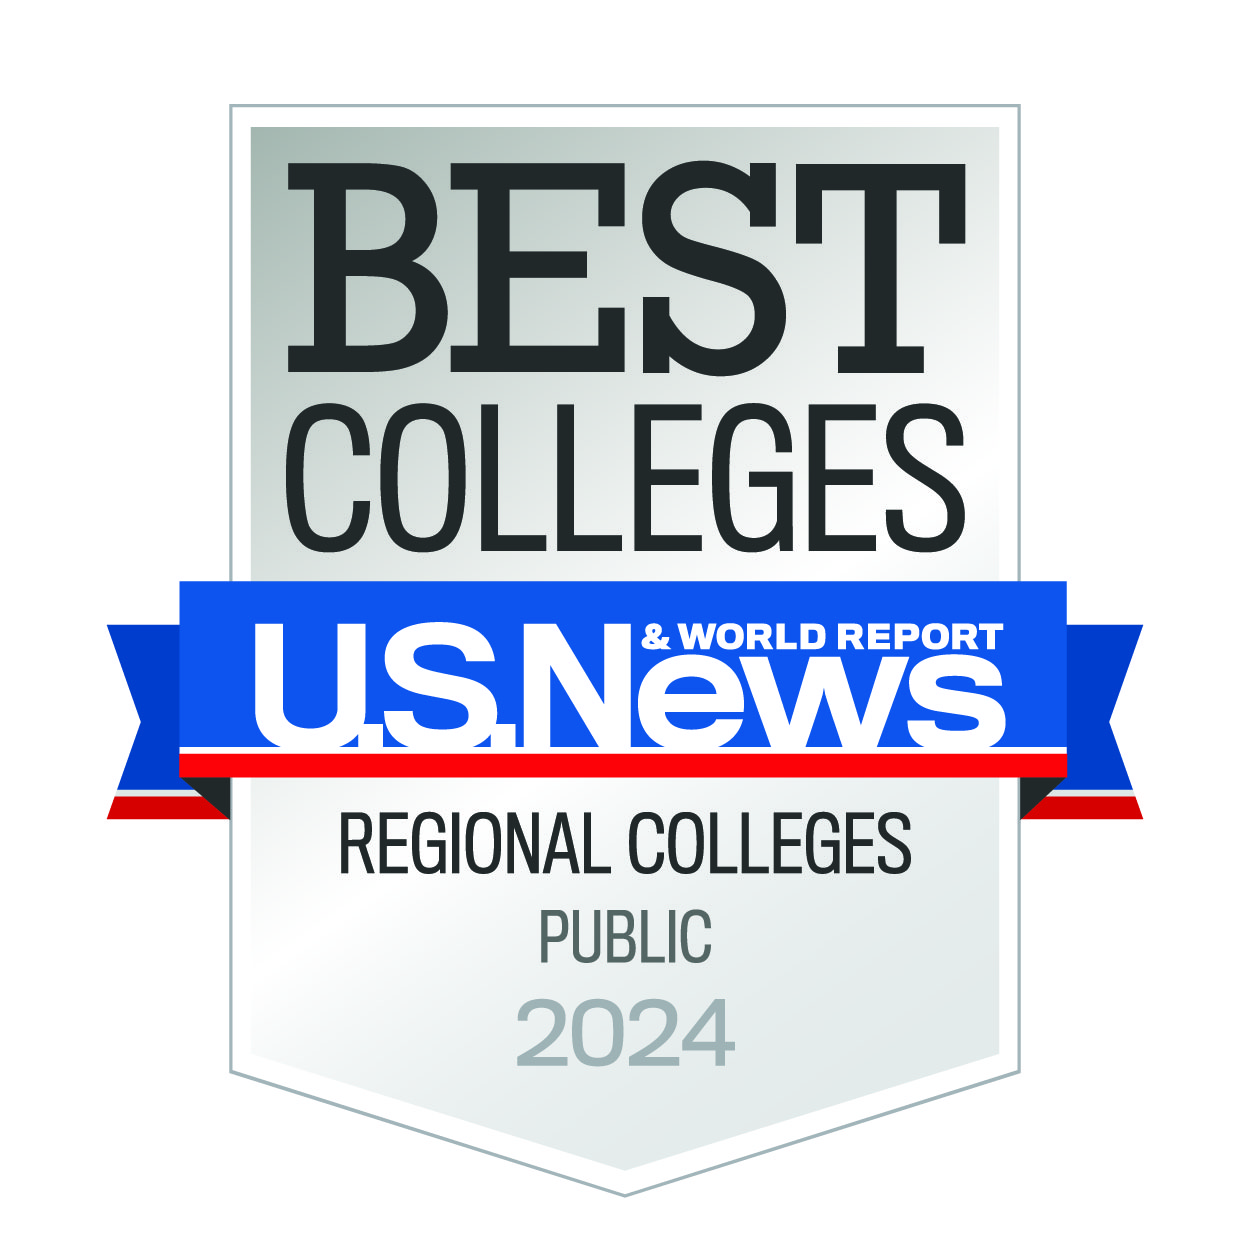 #1 Public College in the Southeast U.S.